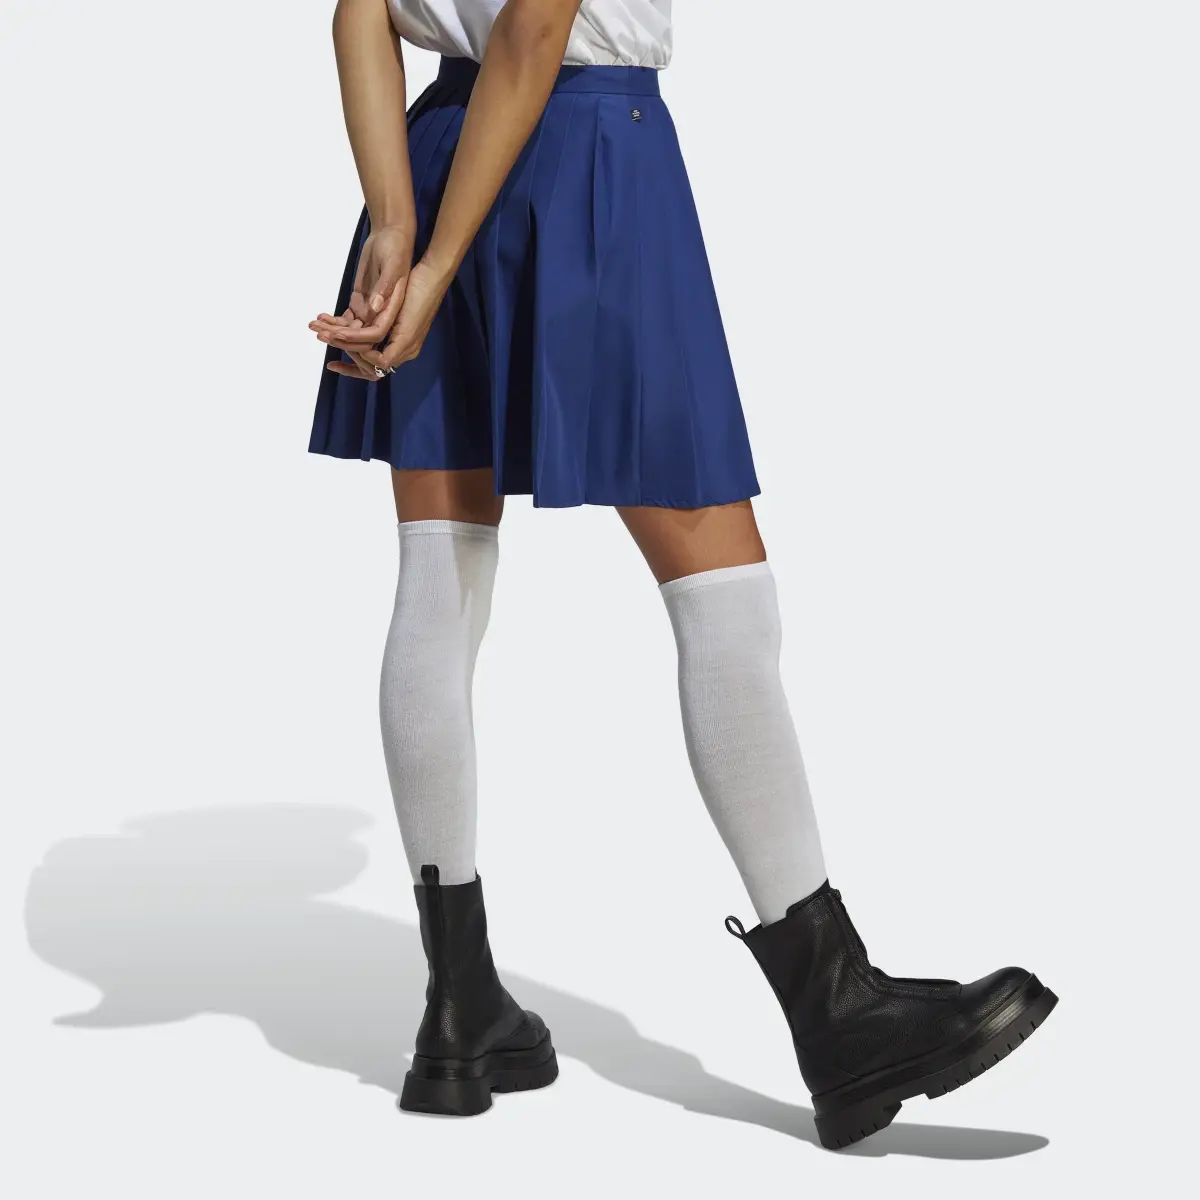 Adidas Pleated Skirt. 2